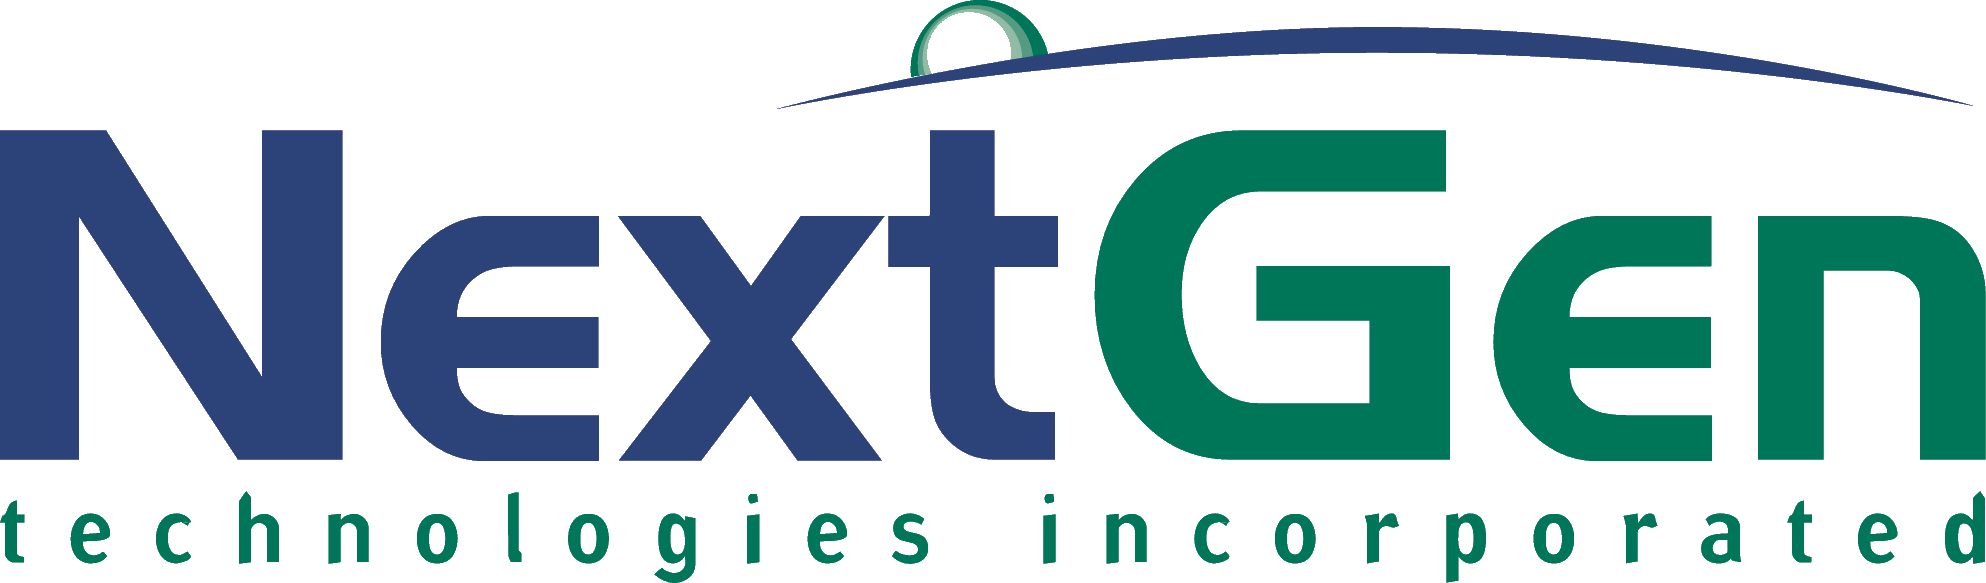 Next-Gen Logo - nextgen logo (1)png - Next Gen Technologies Inc. USA